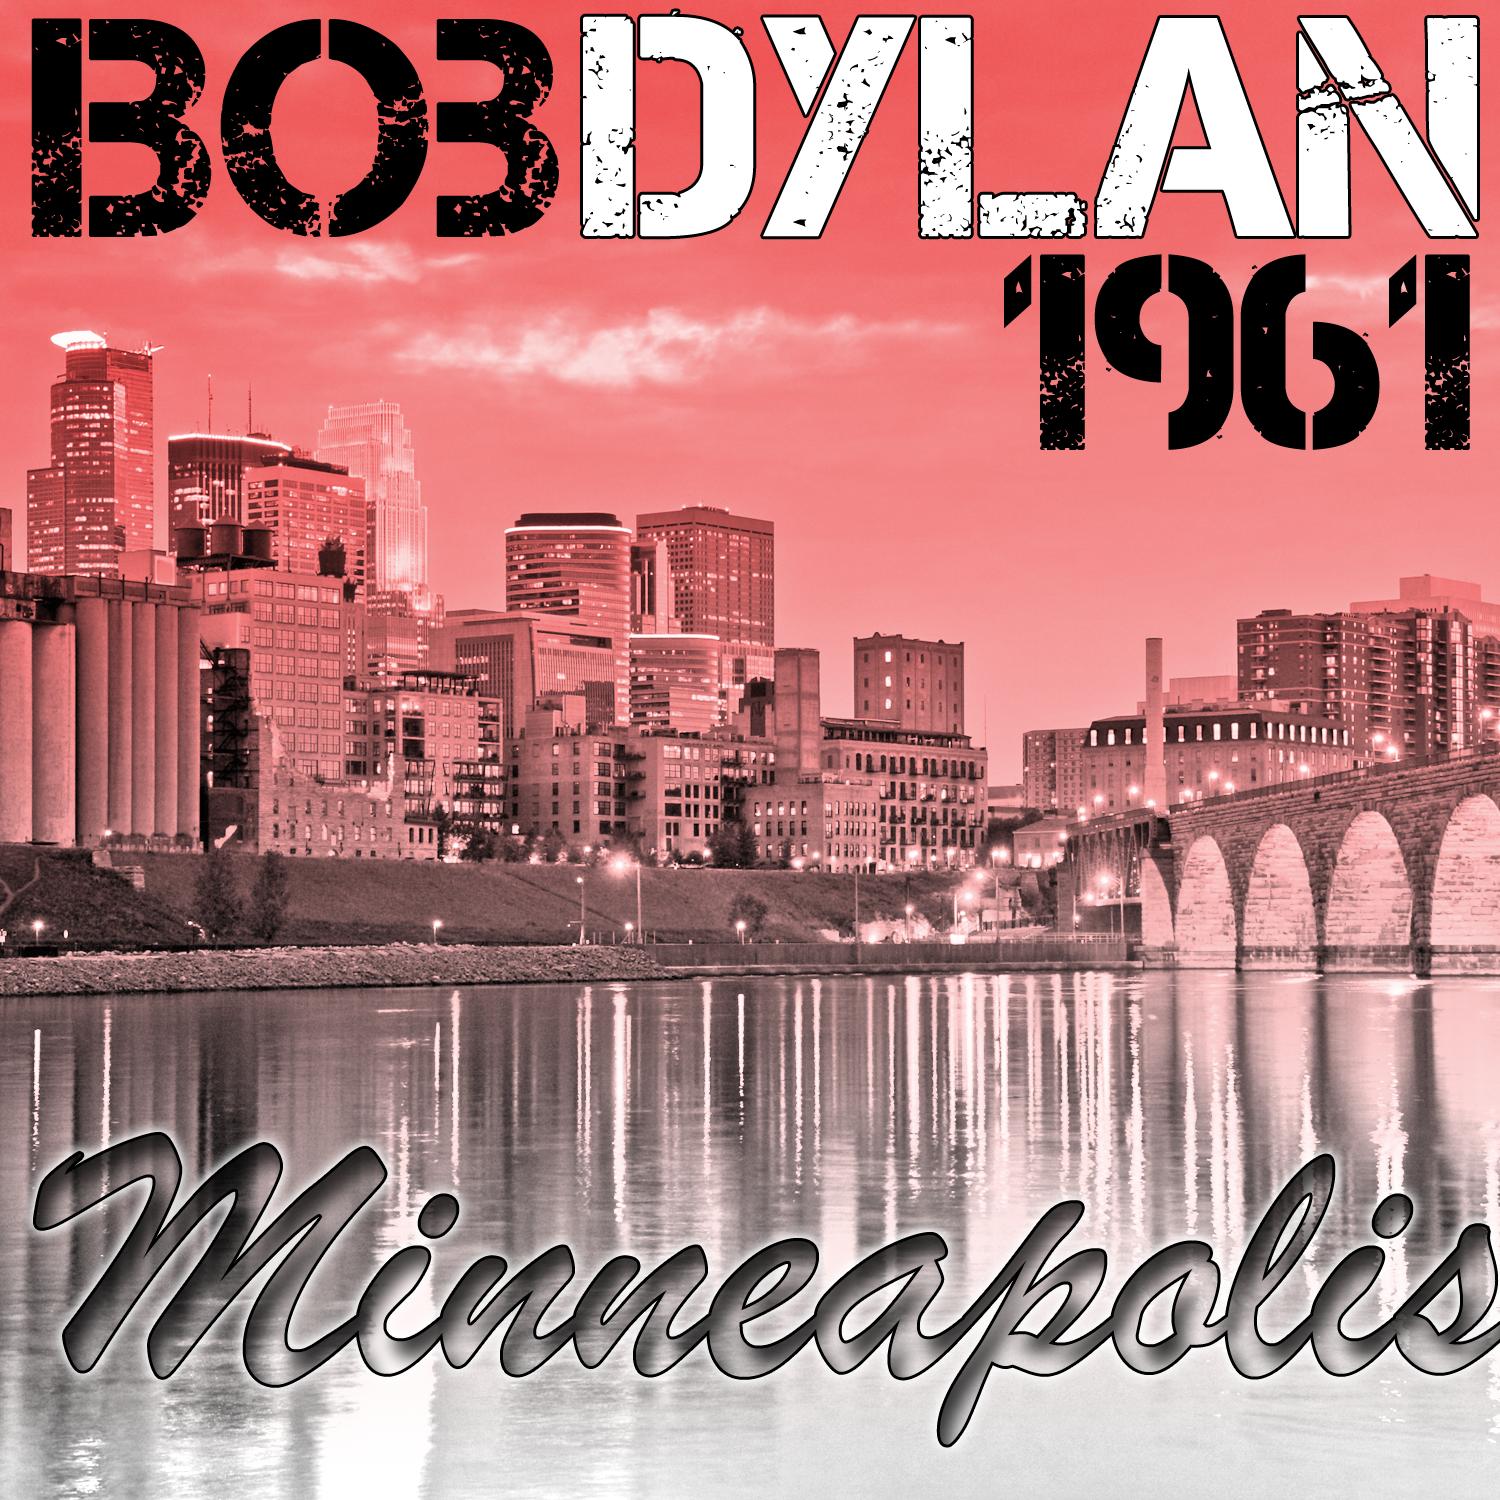 Minneapolis 1961